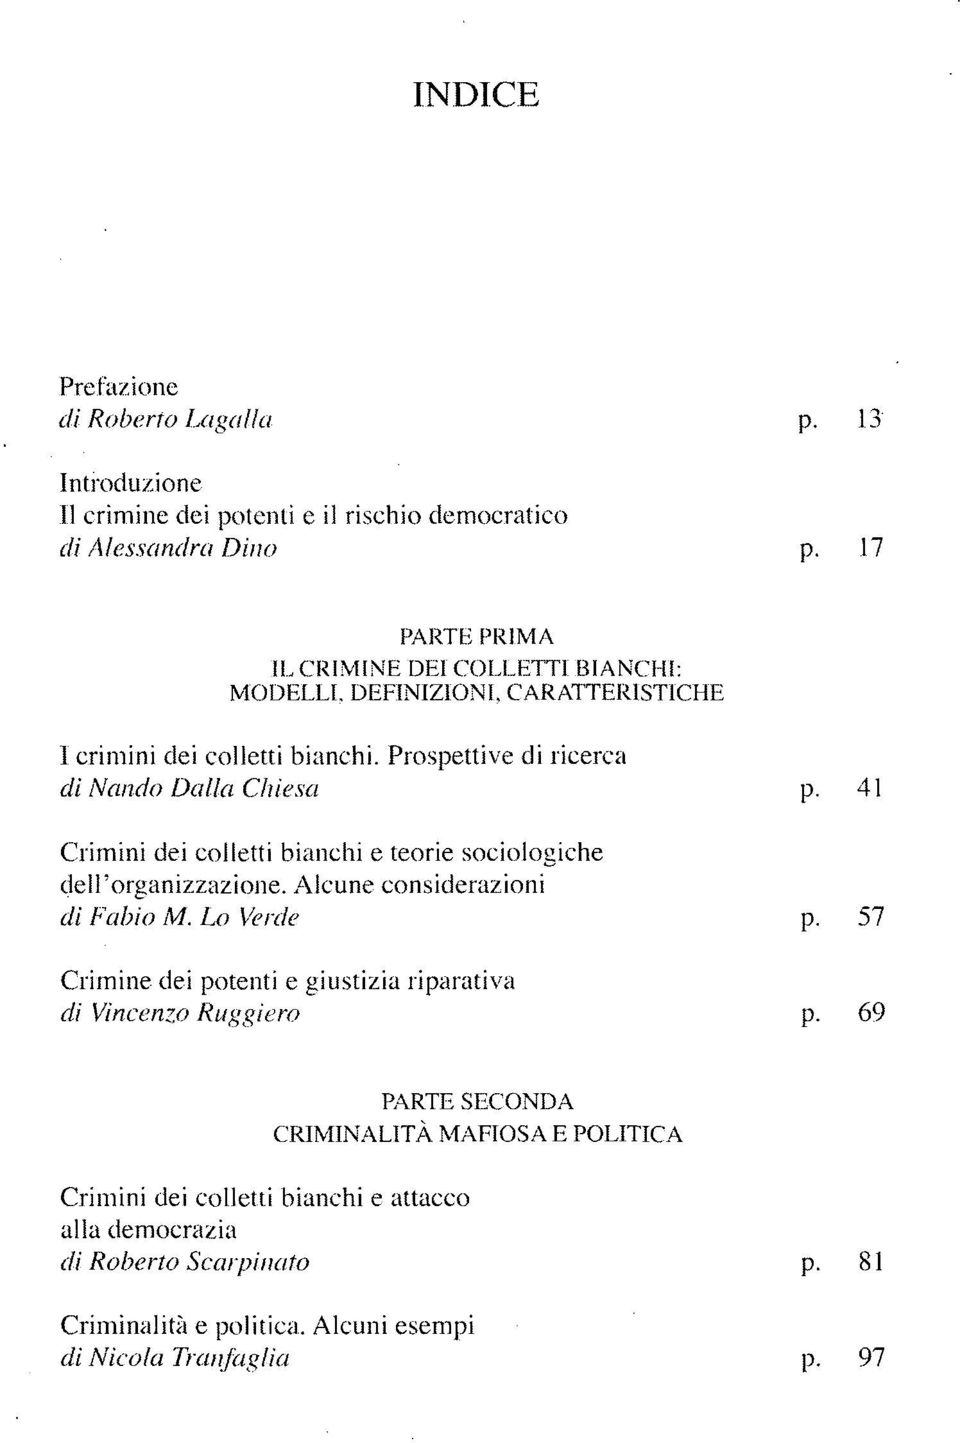 41 Crimini dei colletti bianchi e teorie sociologiche dell'organizzazione. Alcune considerazioni di Fabio M. Lo Verde p.